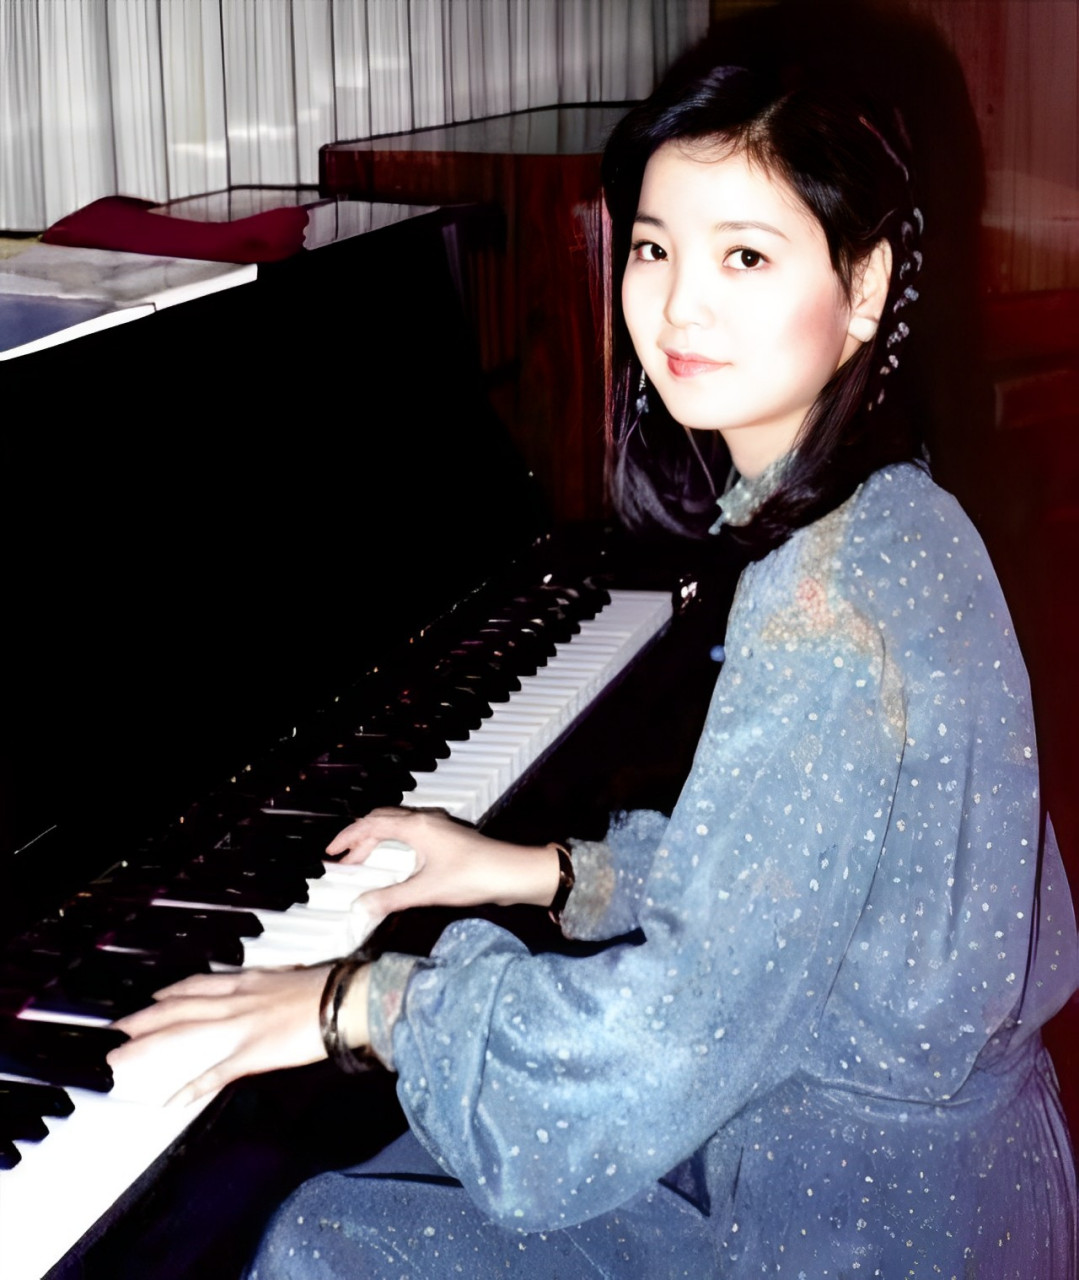 这是正在弹奏钢琴的邓丽君,照片中邓丽君身穿一身水蓝色斑点长裙,头上